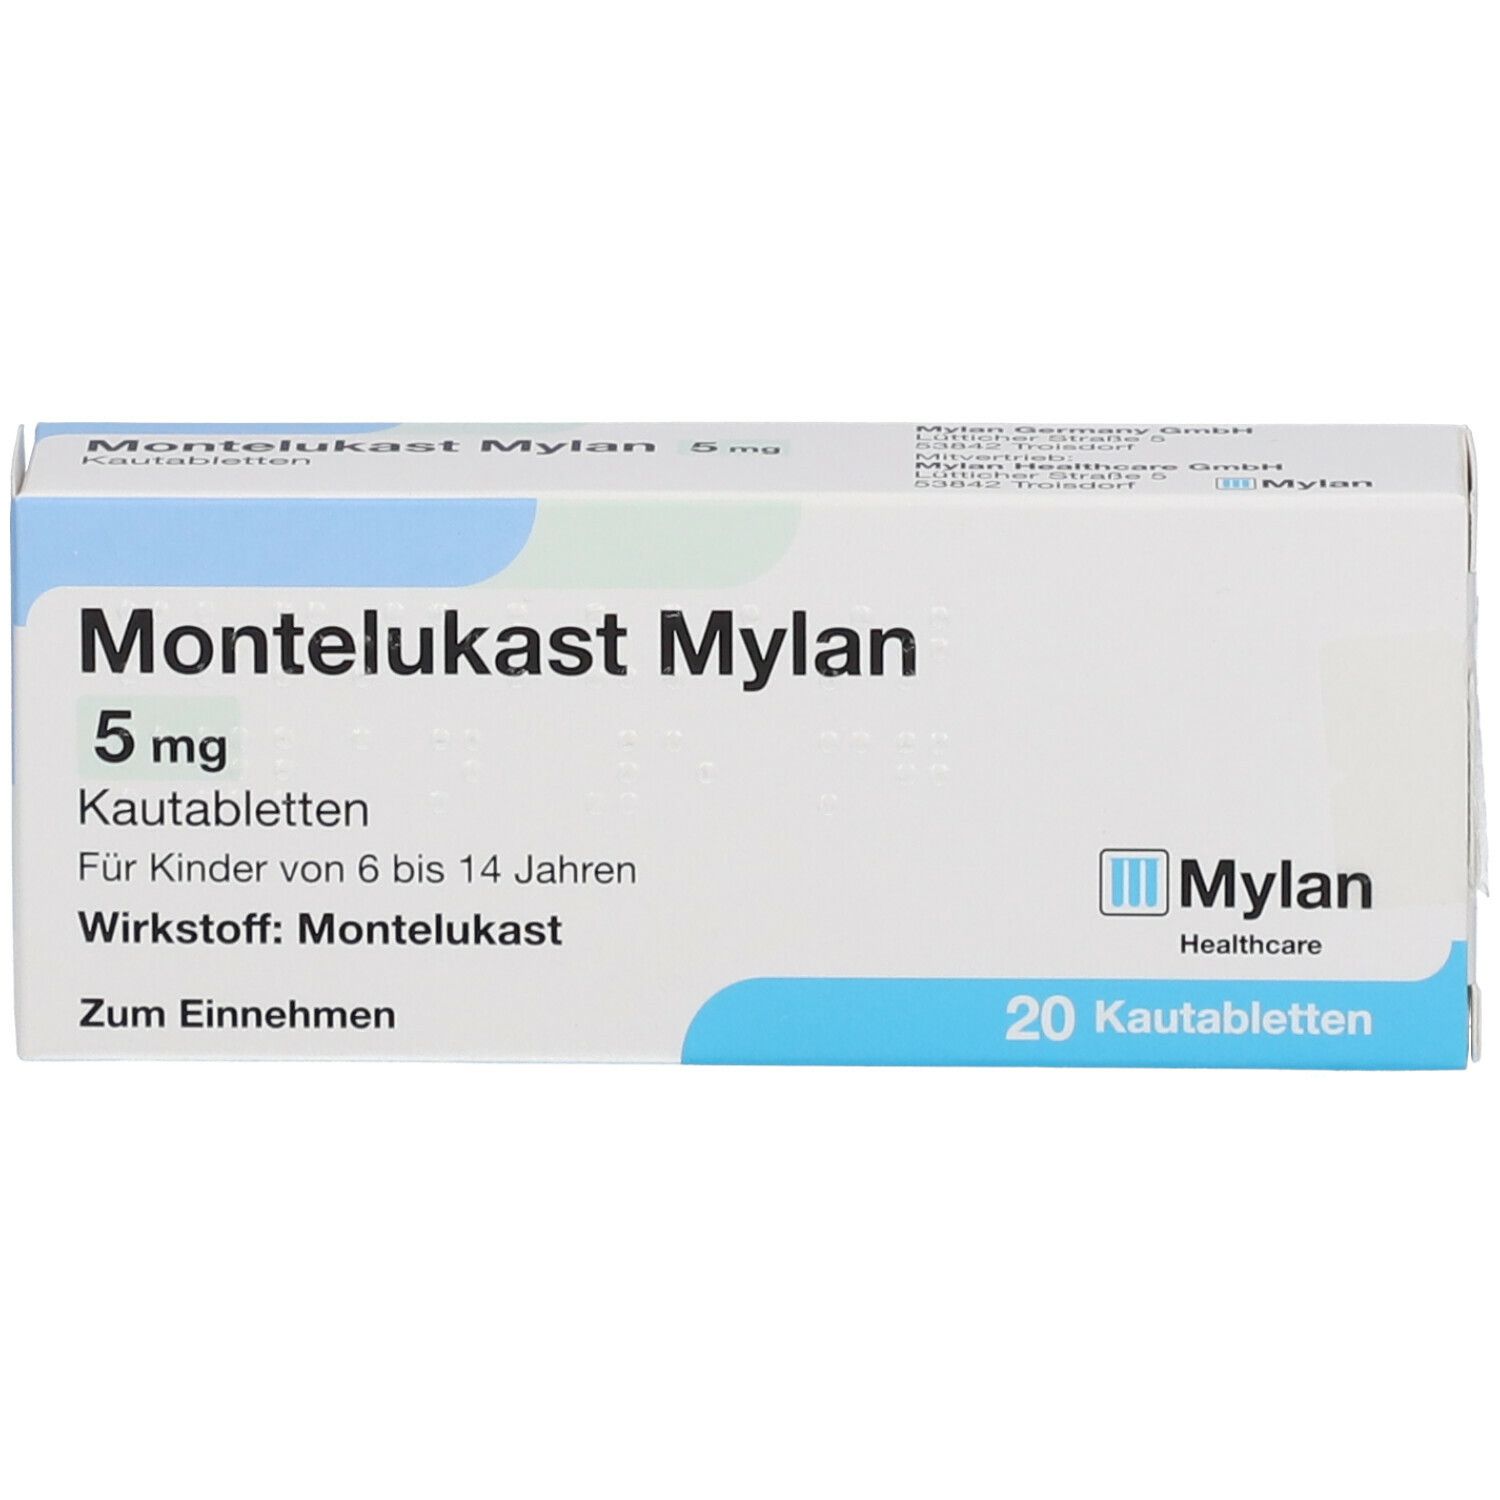 Montelukast Mylan 5 mg